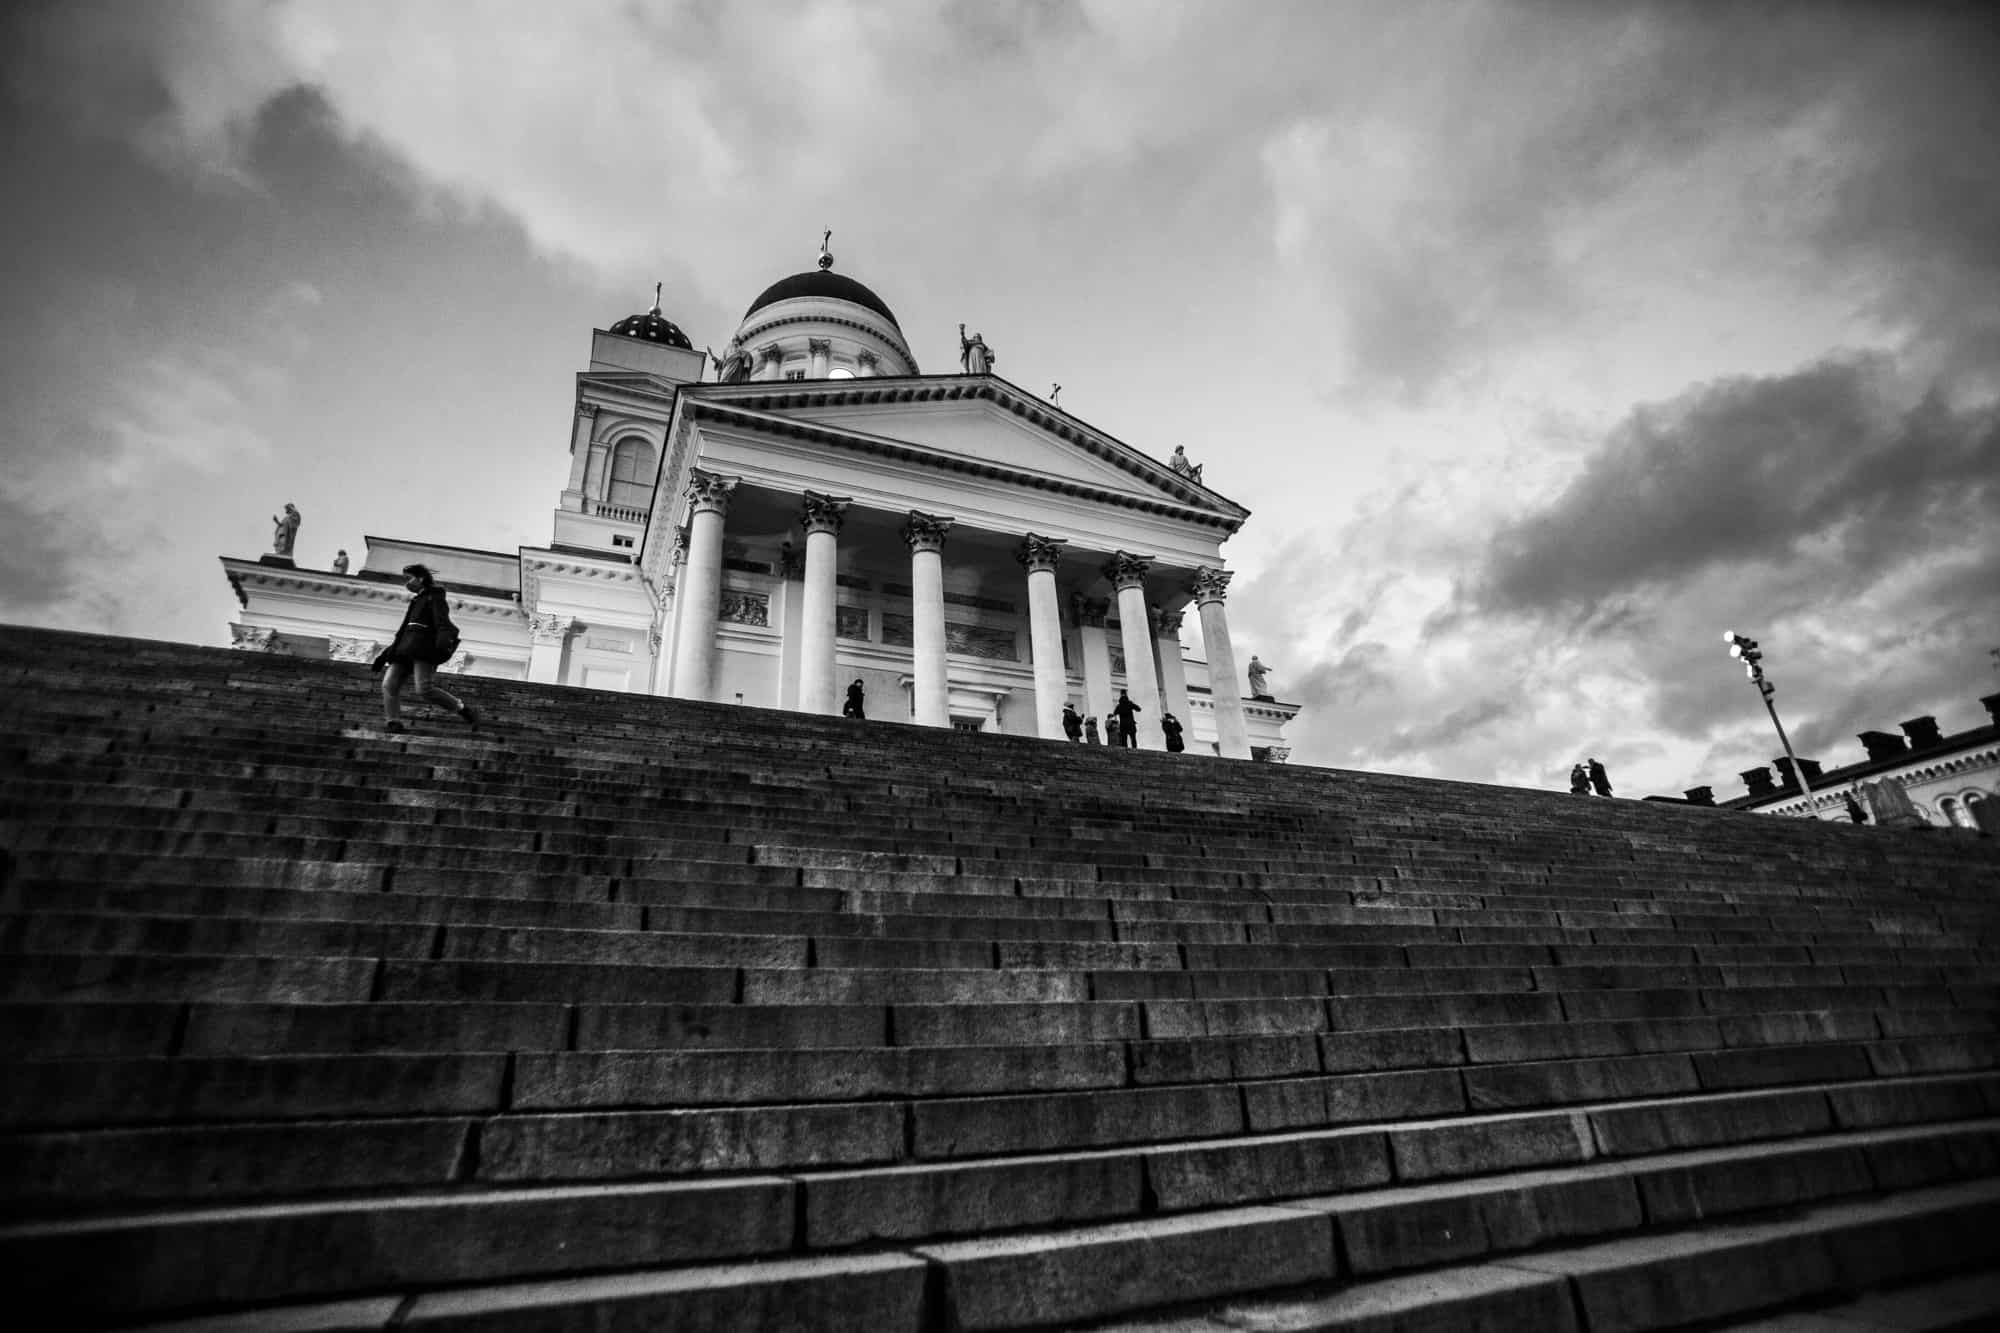 Tuomiokirkko Cathedral, Helsinki